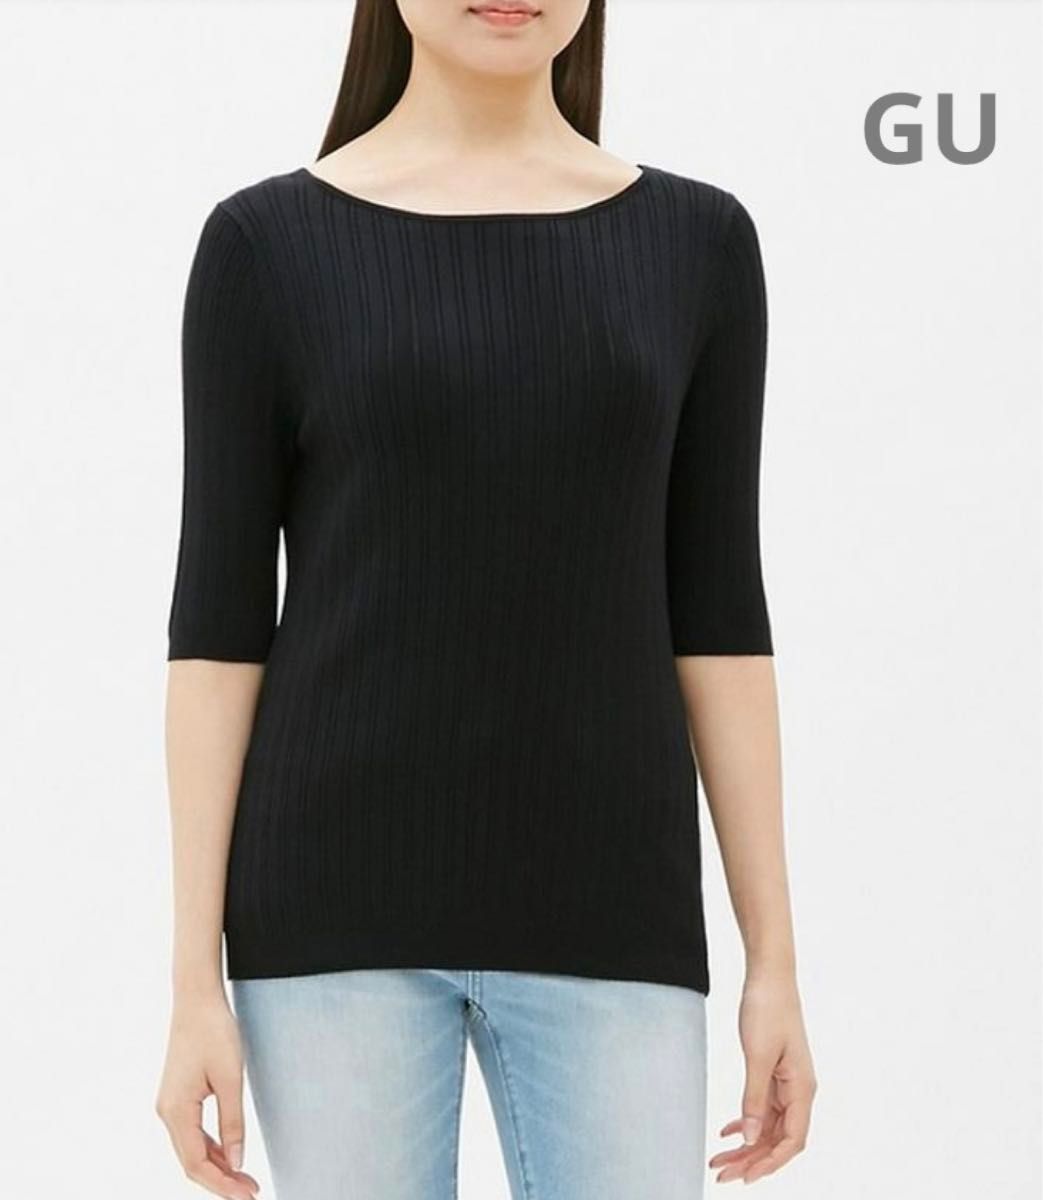 GU ジーユーワイドリブボートネックセーター(5分袖)